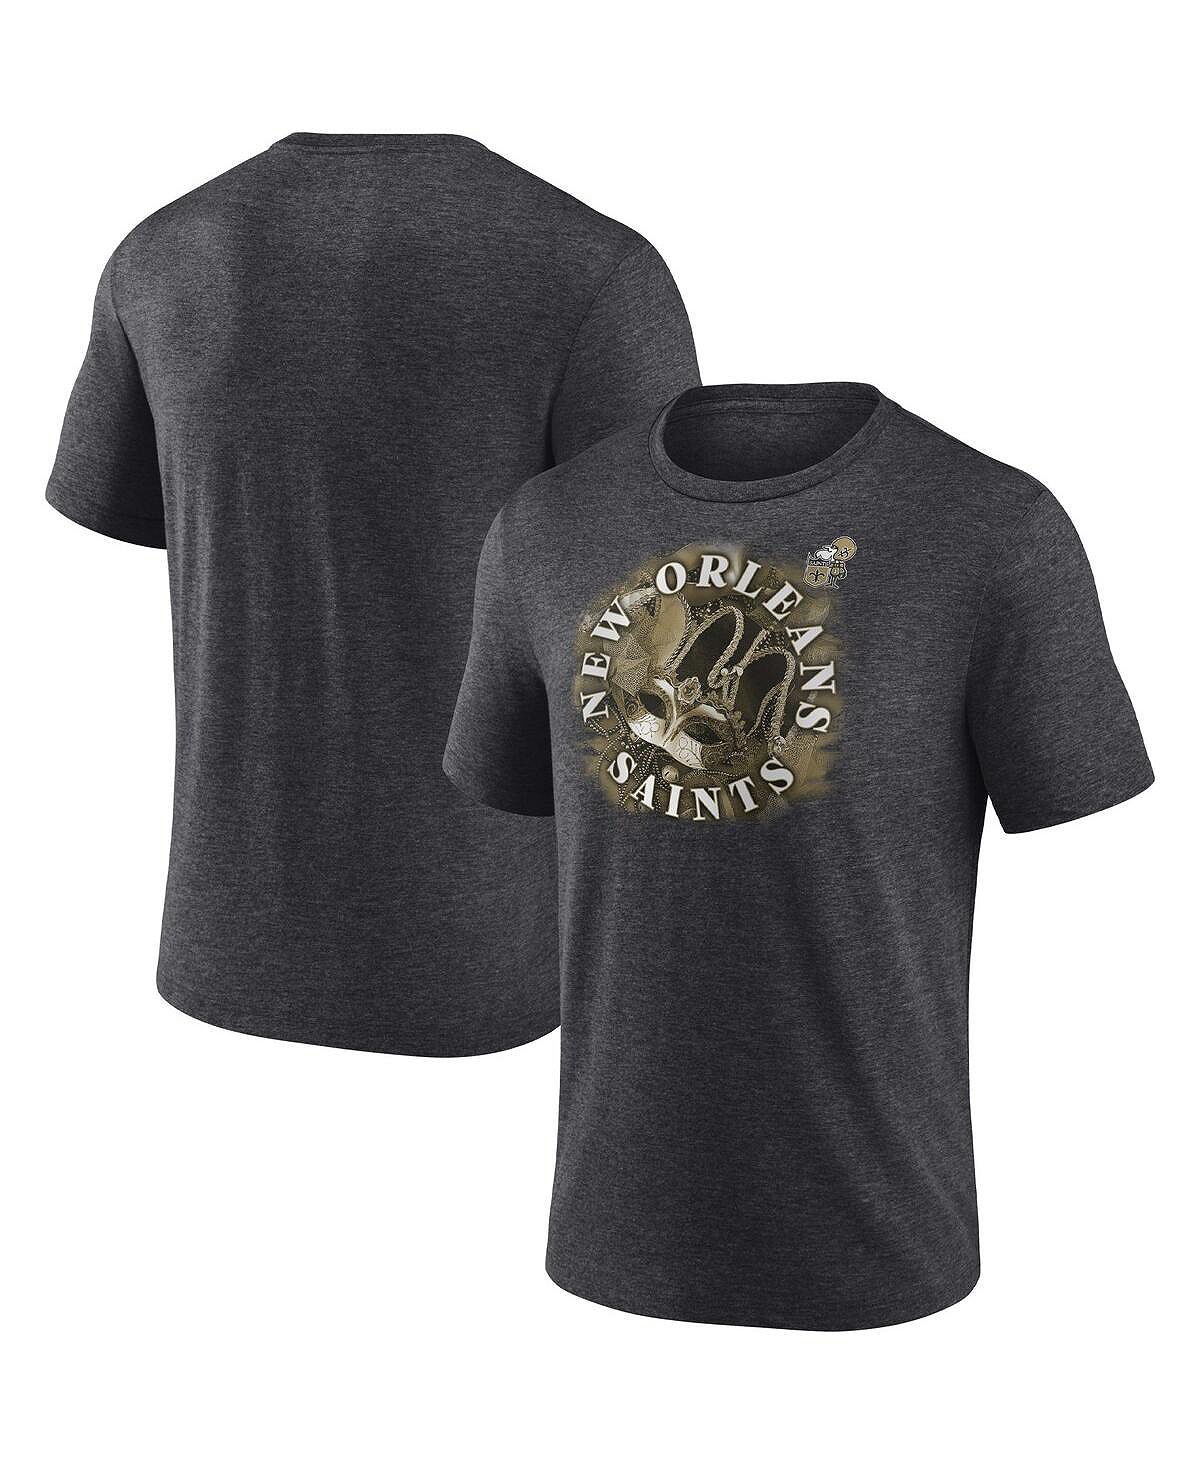 Мужская темно-серая футболка new orleans saints sporting chance tri-blend с фирменной меланжевой отделкой Fanatics, мульти